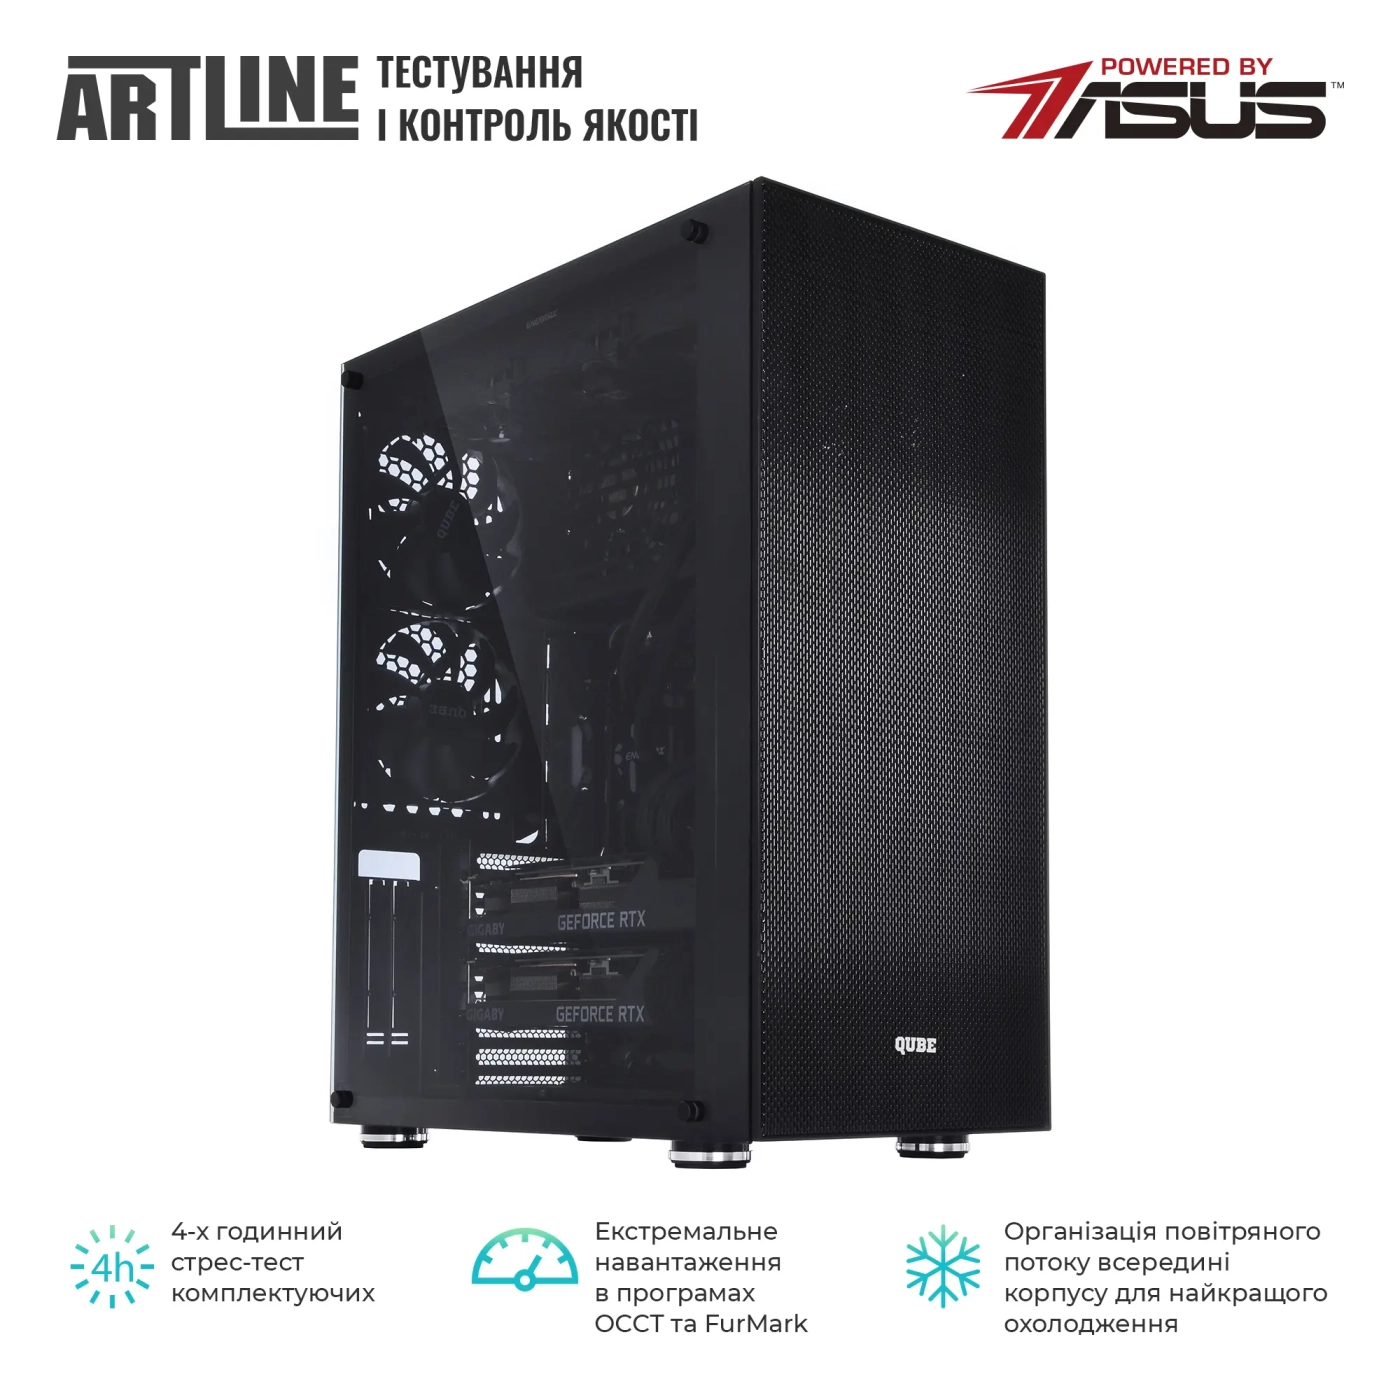 Купить Сервер ARTLINE Business T85v12 - фото 8